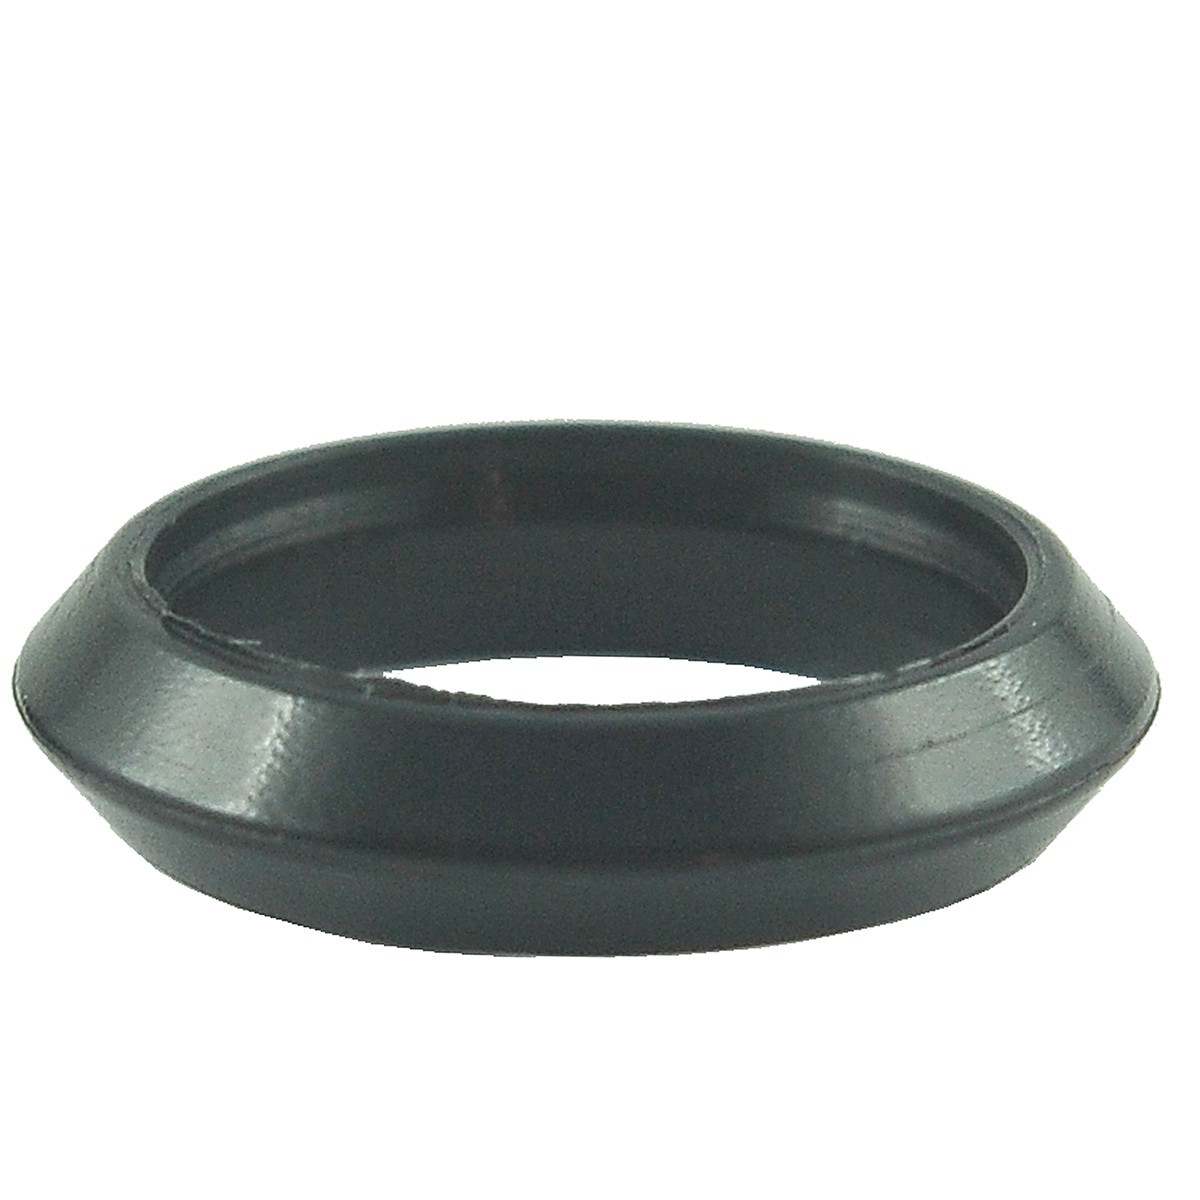 Ring 24 x 32 x 7 mm / Kubota L3408 / 31351-37330 / 5-27-101-88